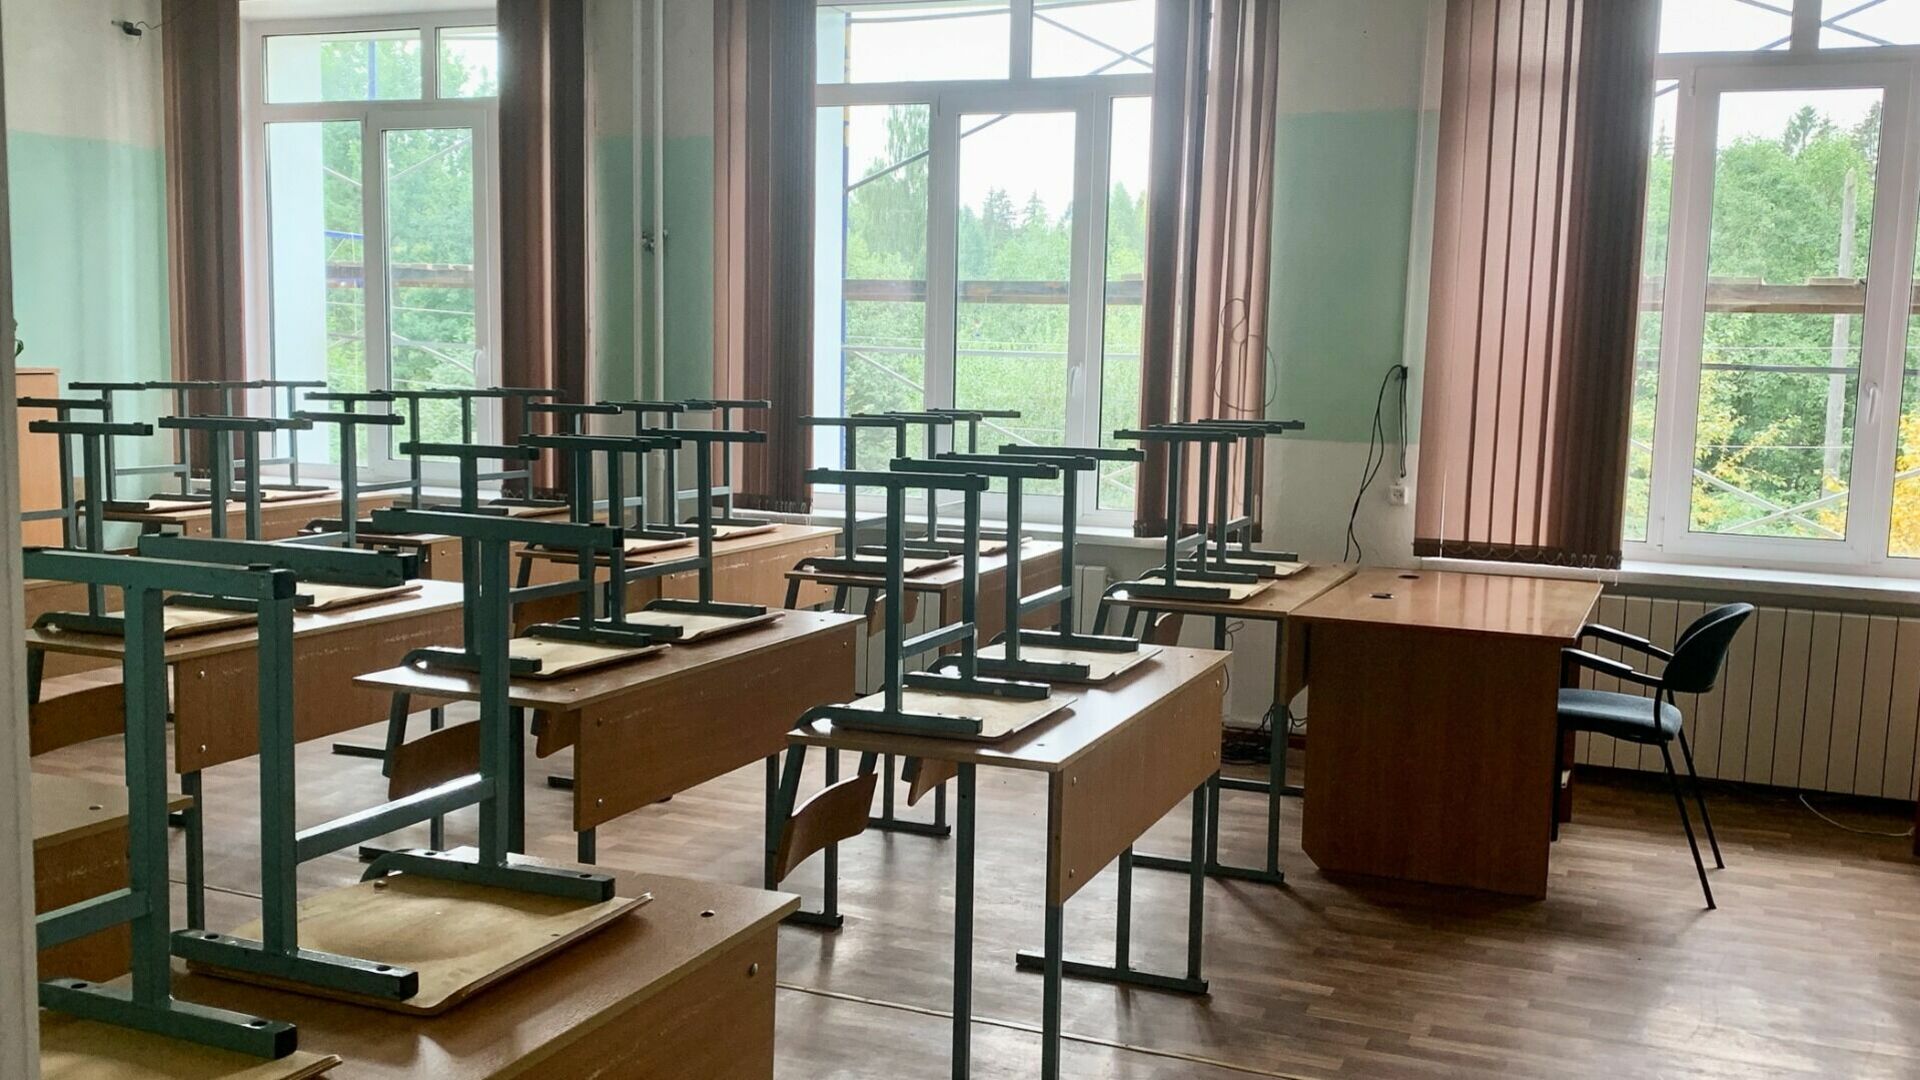 Учителя школы в Нижнем Новгороде заподозрили в домогательствах